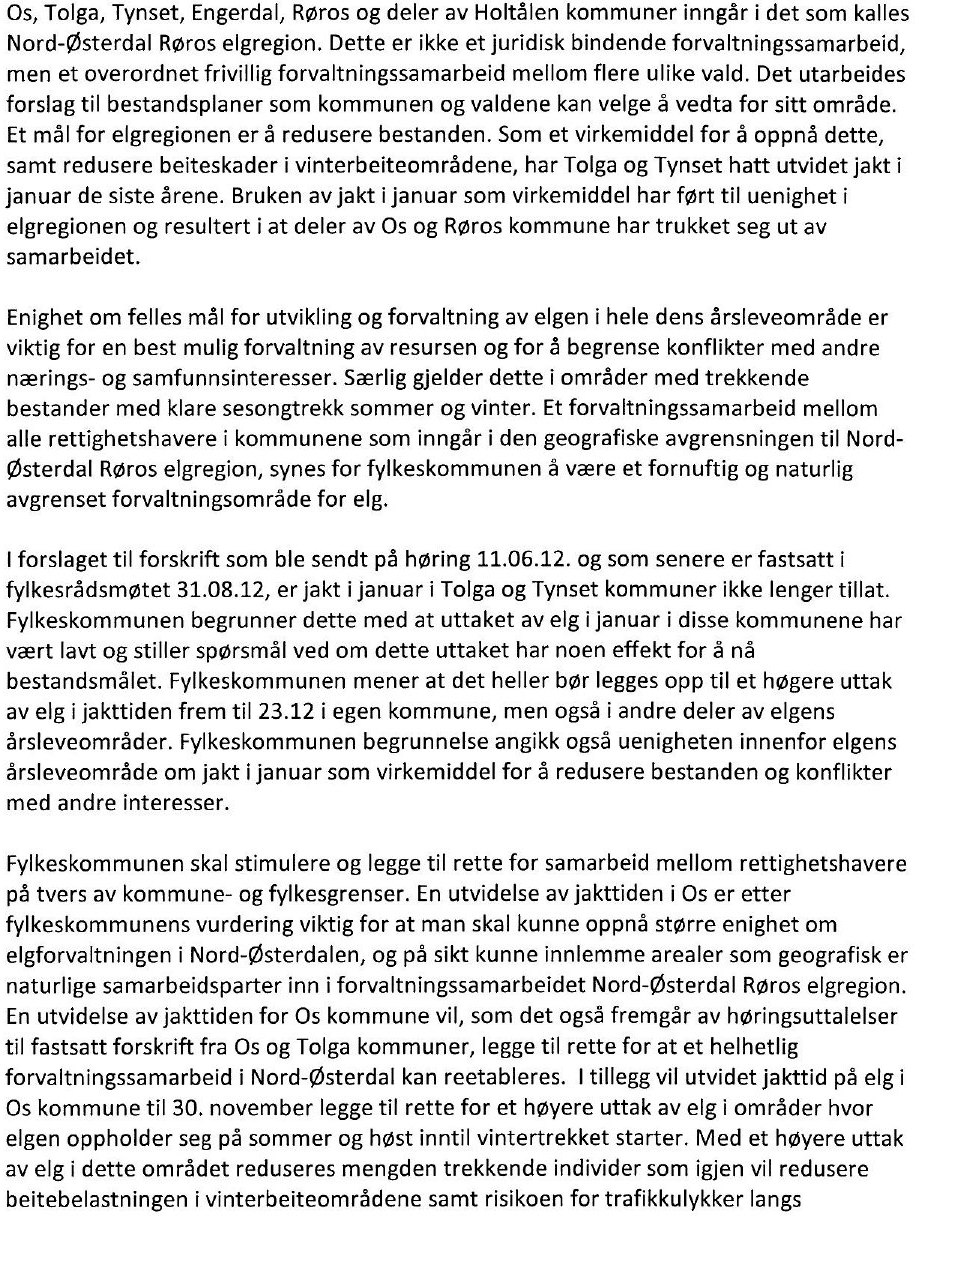 Det vises for øvrig til saksutredningen i høringsbrev fra Hedmark Fylkeskommune, datert 4.